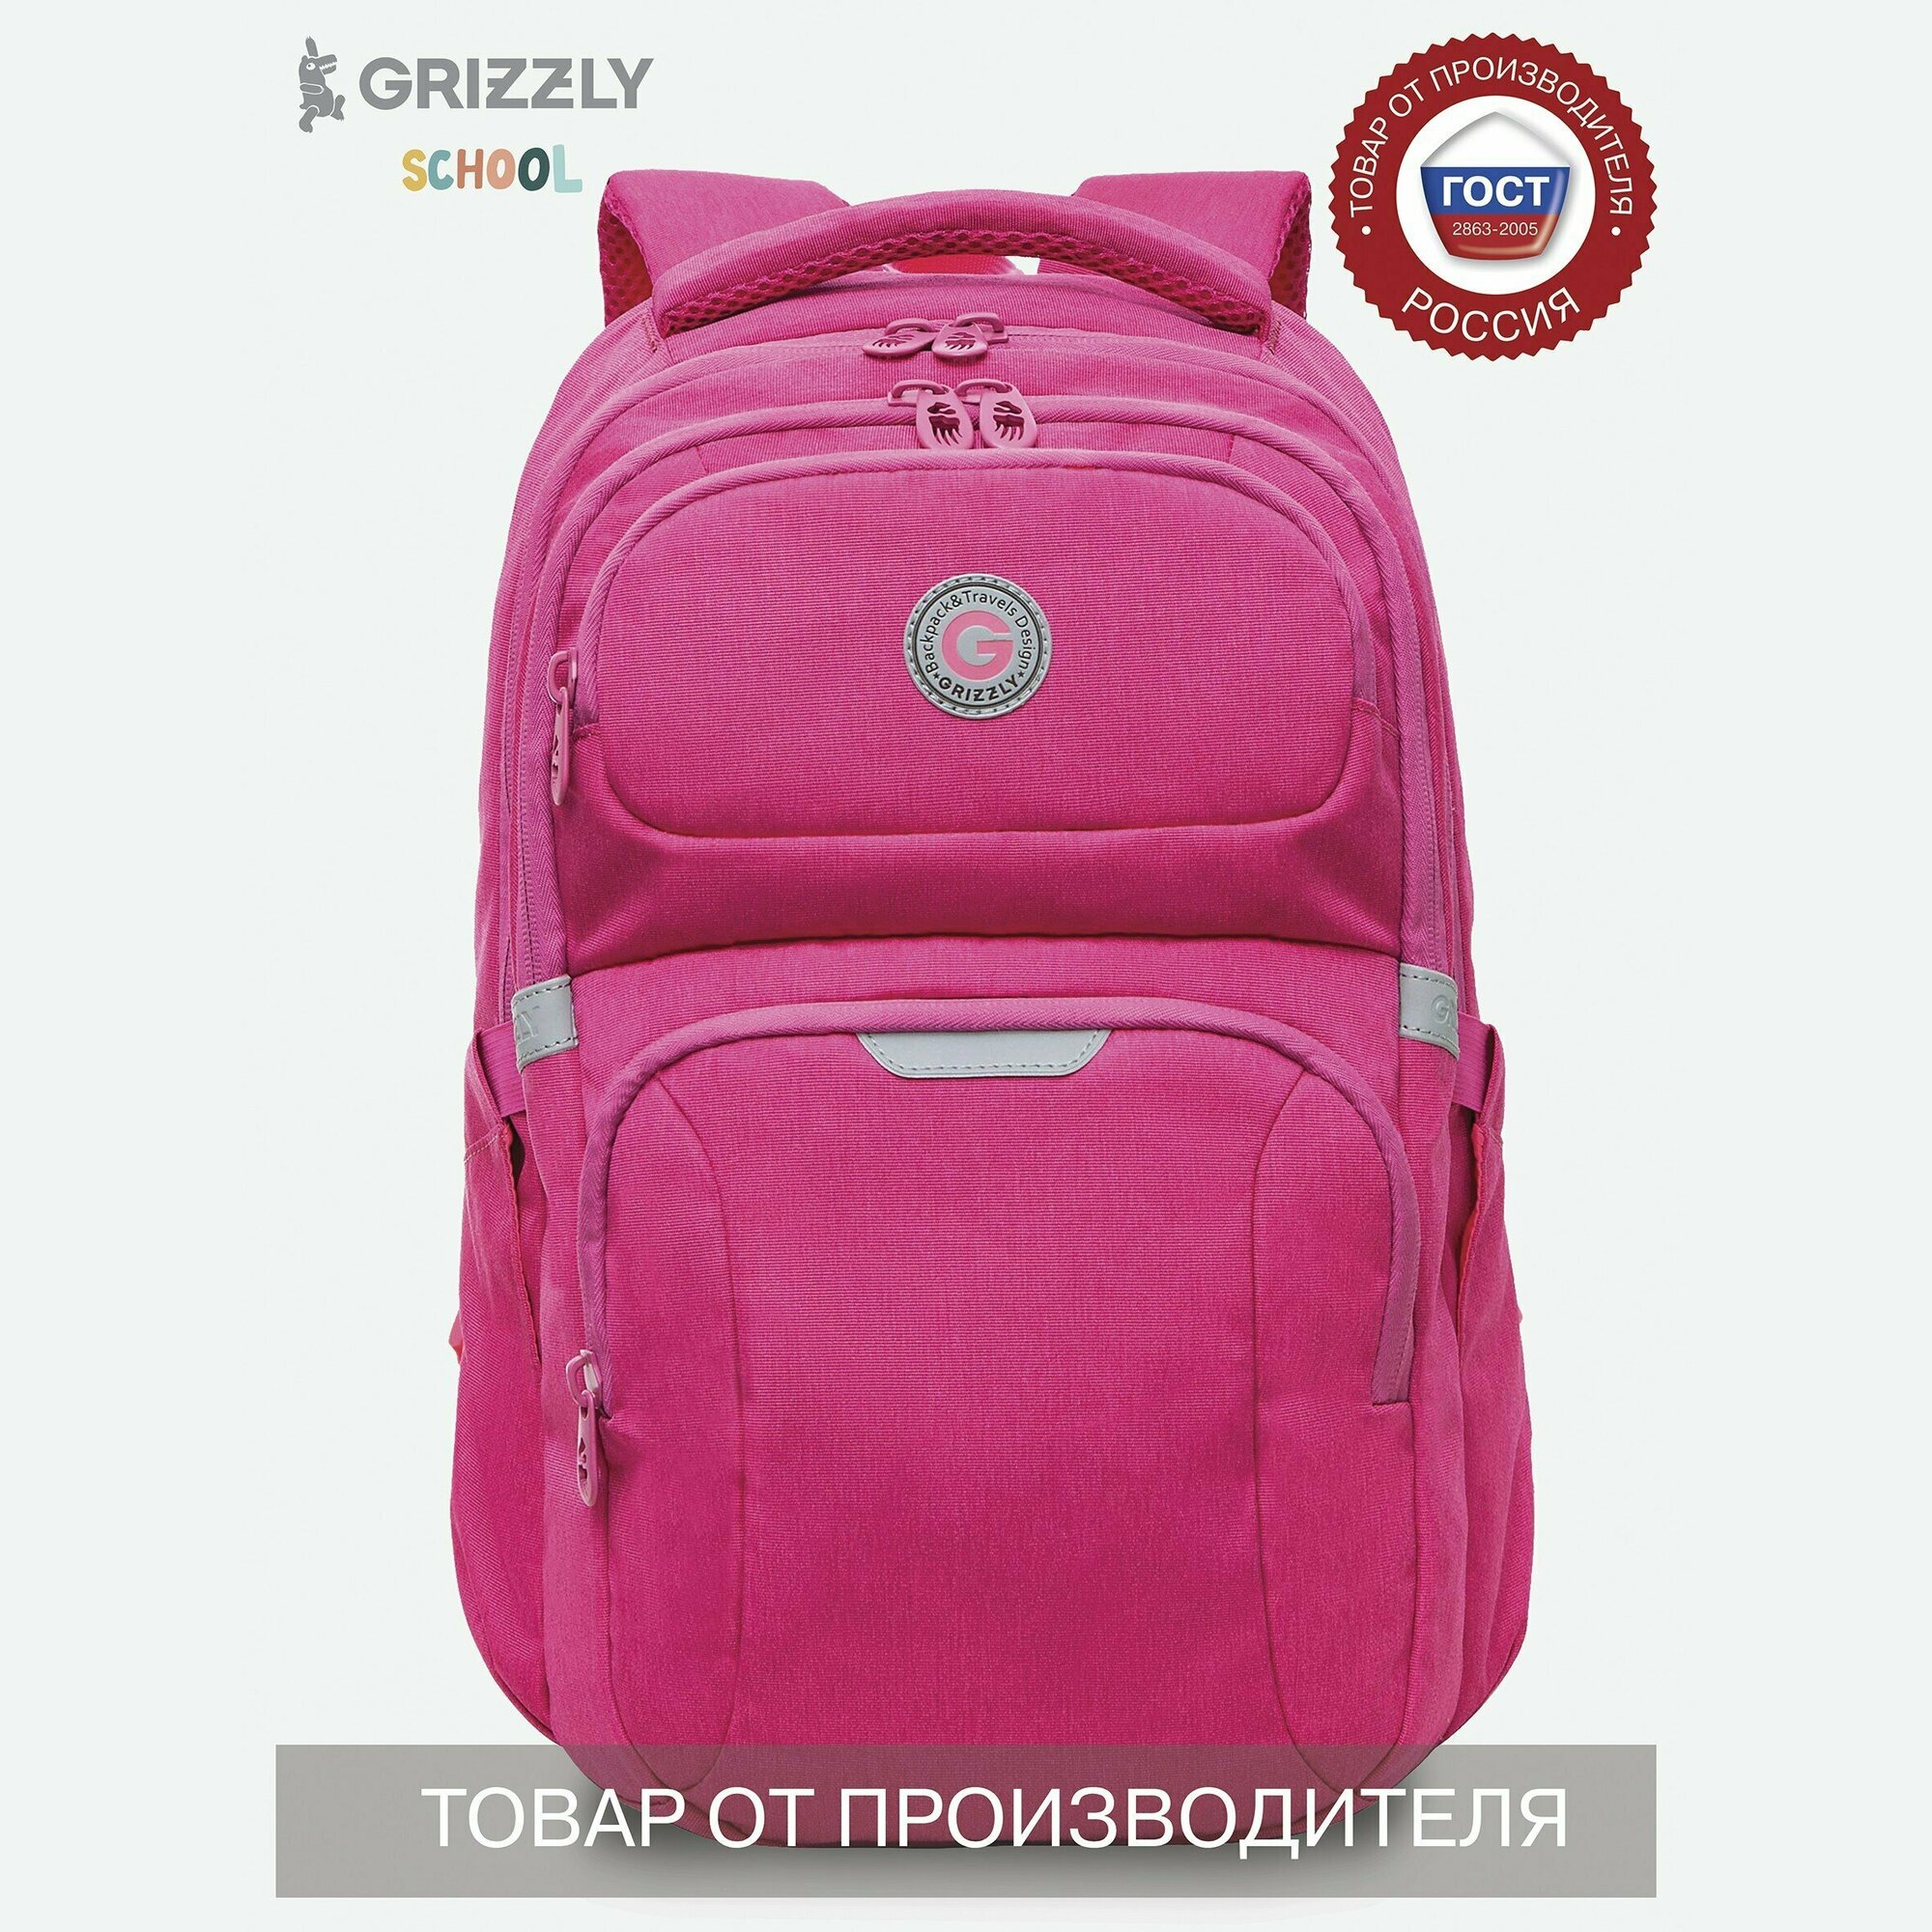 Молодежный женский повседневный рюкзак: вместительный, легкий, практичный RD-342-2/3